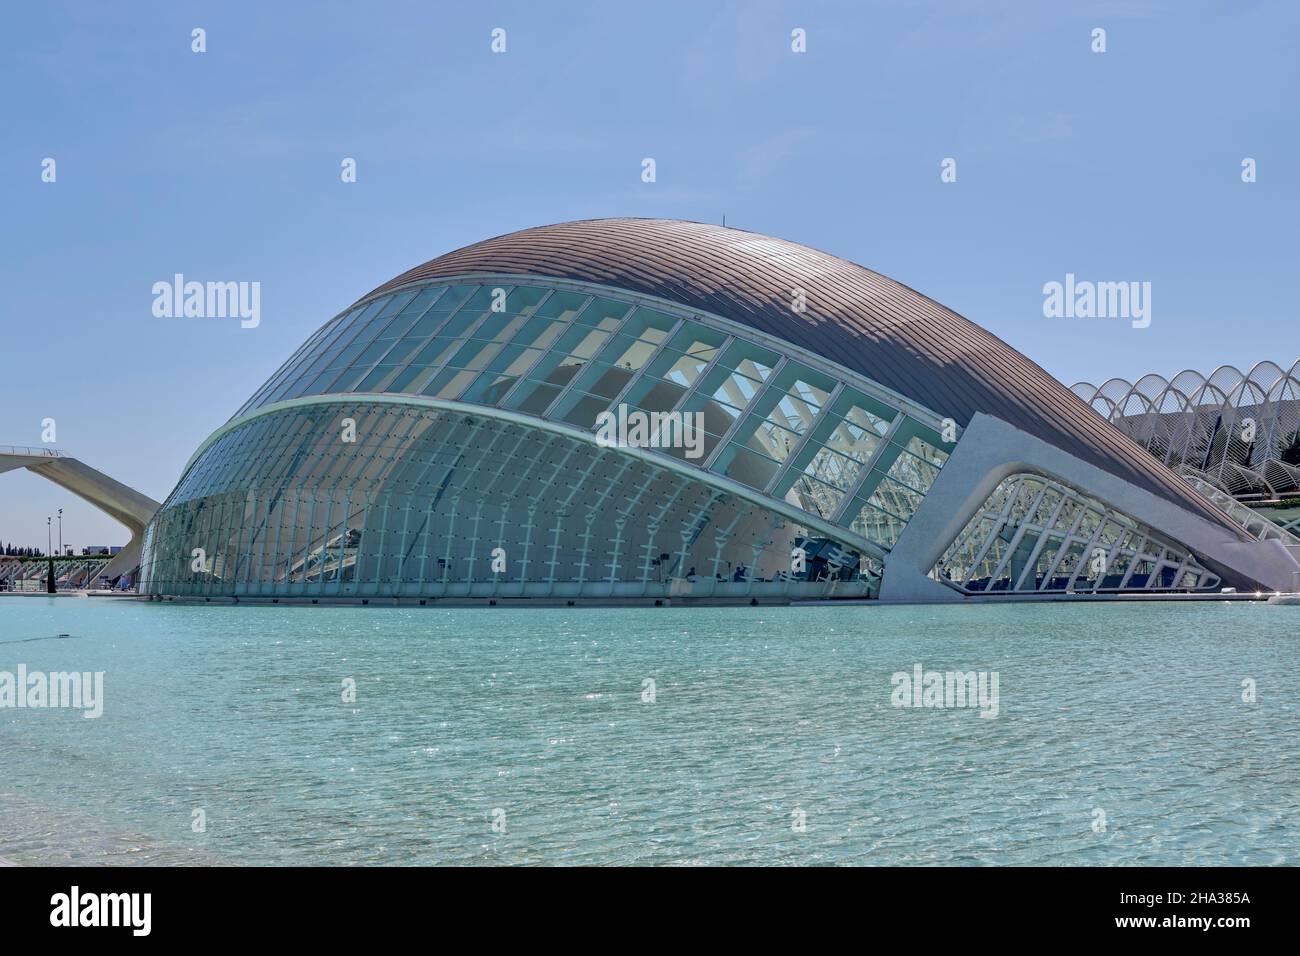 Stadt der Künste und Wissenschaften, Architekt Ingenieur Santiago Calatrava, Architektur modern. Hemisferisch. Valencianische Gemeinschaft, Spanien, Europa Stockfoto